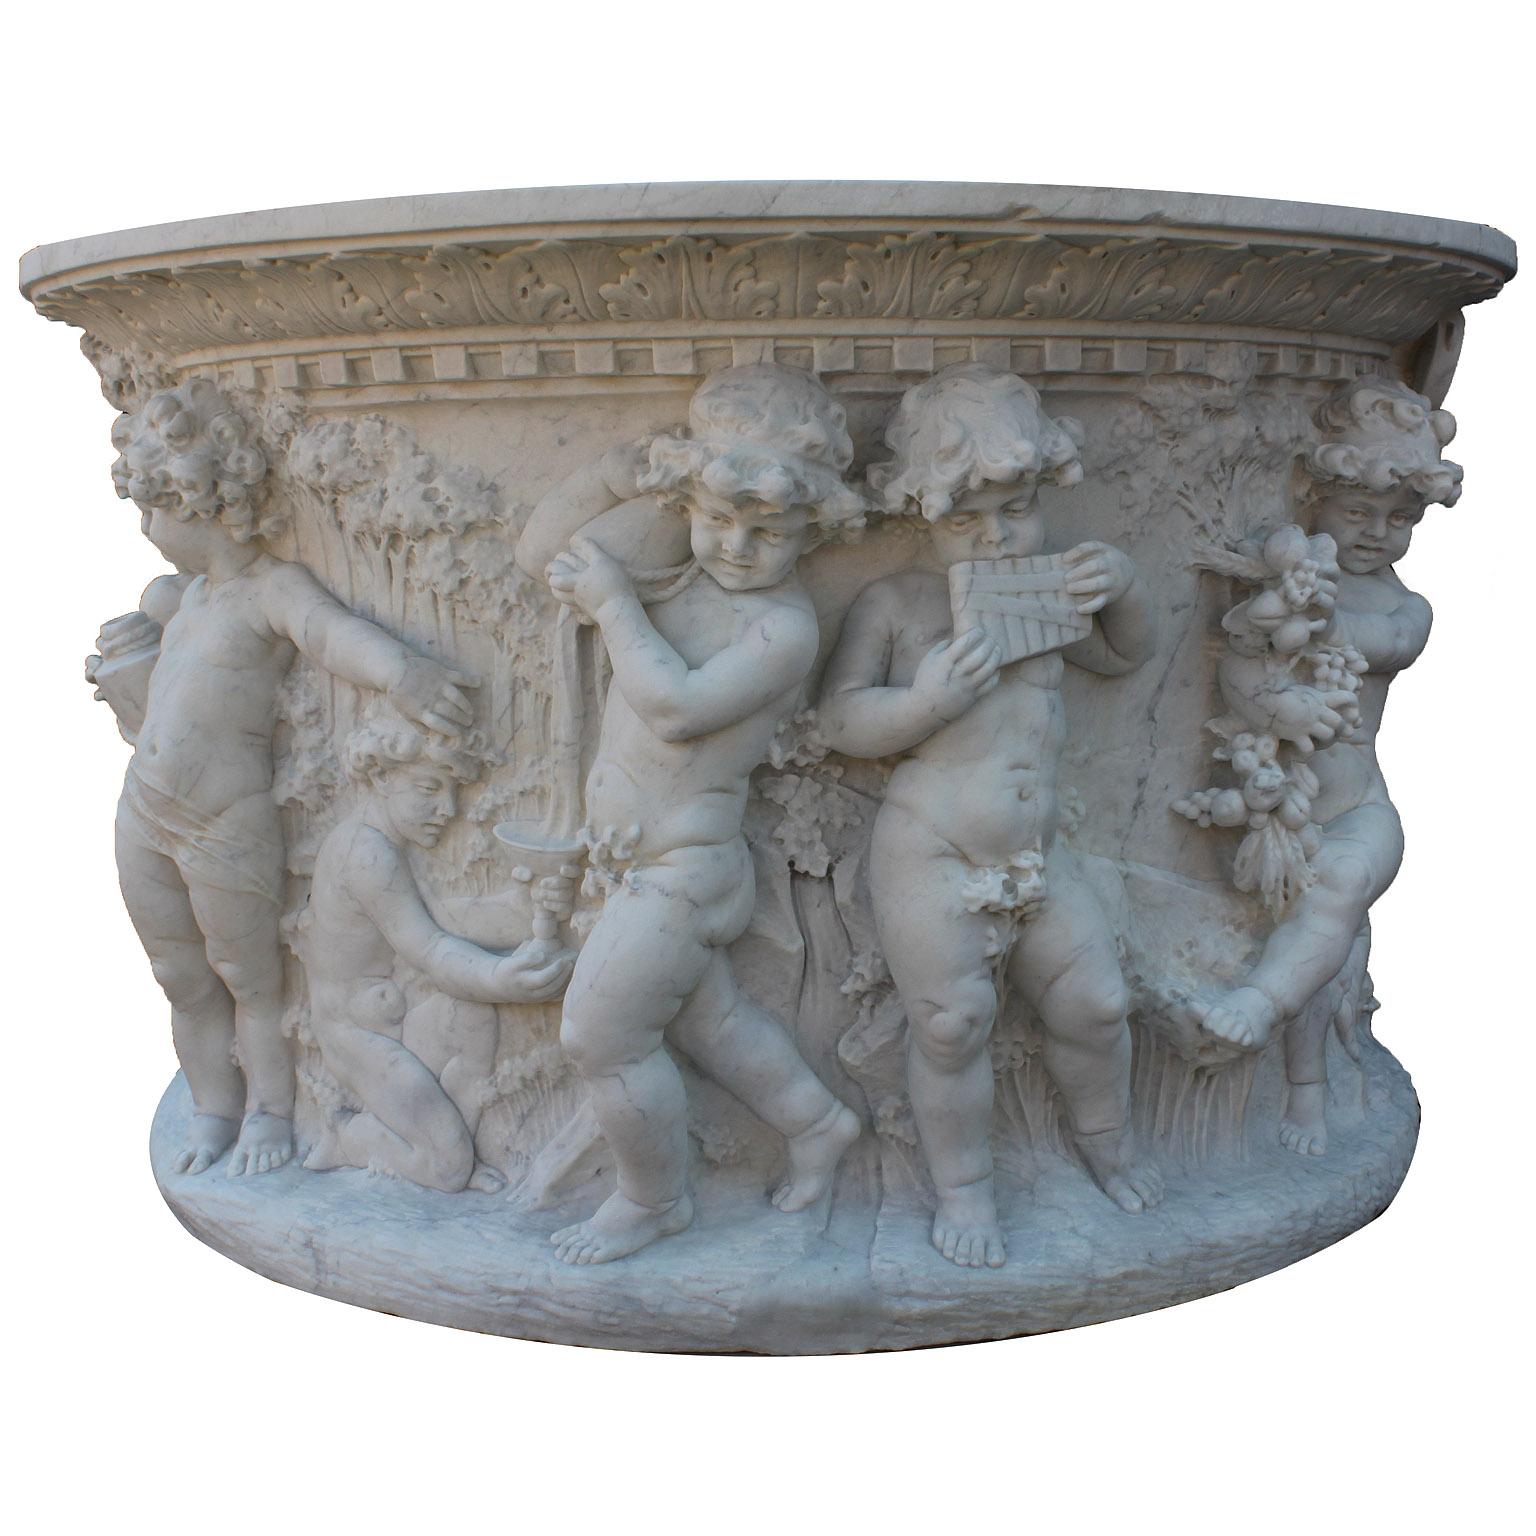 Très belle tête de puits à souhait en marbre blanc de Carrare, exceptionnellement sculptée, de style néo-baroque italien des XIXe et XXe siècles, reposant sur une base octogonale en marbre à deux marches. La tête de puits circulaire en marbre à